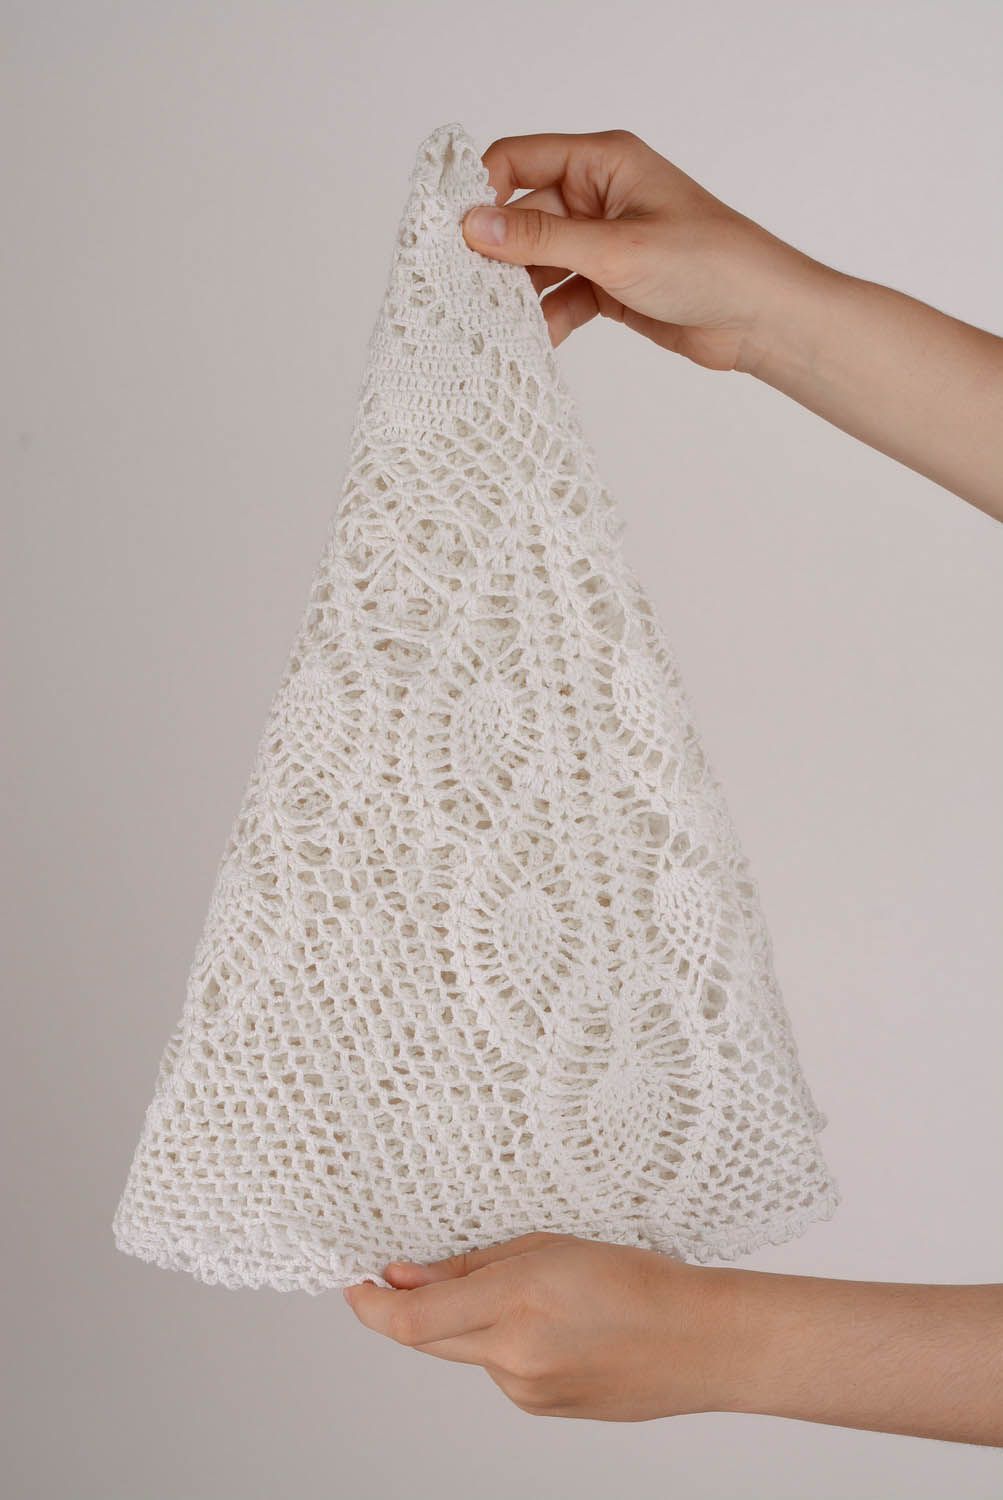 Napperon tricoté au crochet blanc ajouré photo 1